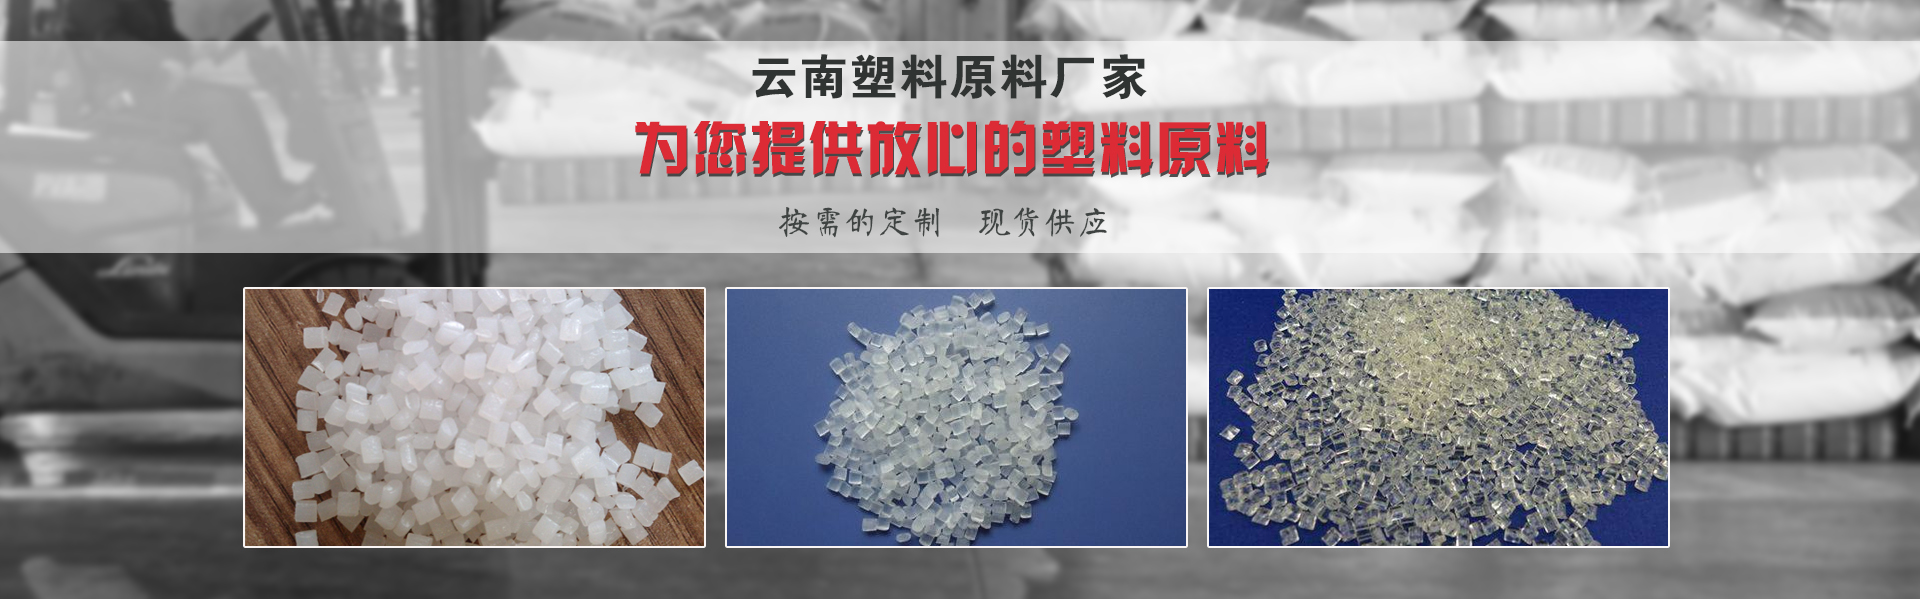 云南塑料原料廠家帶你揭秘塑料的質量鑒別方法